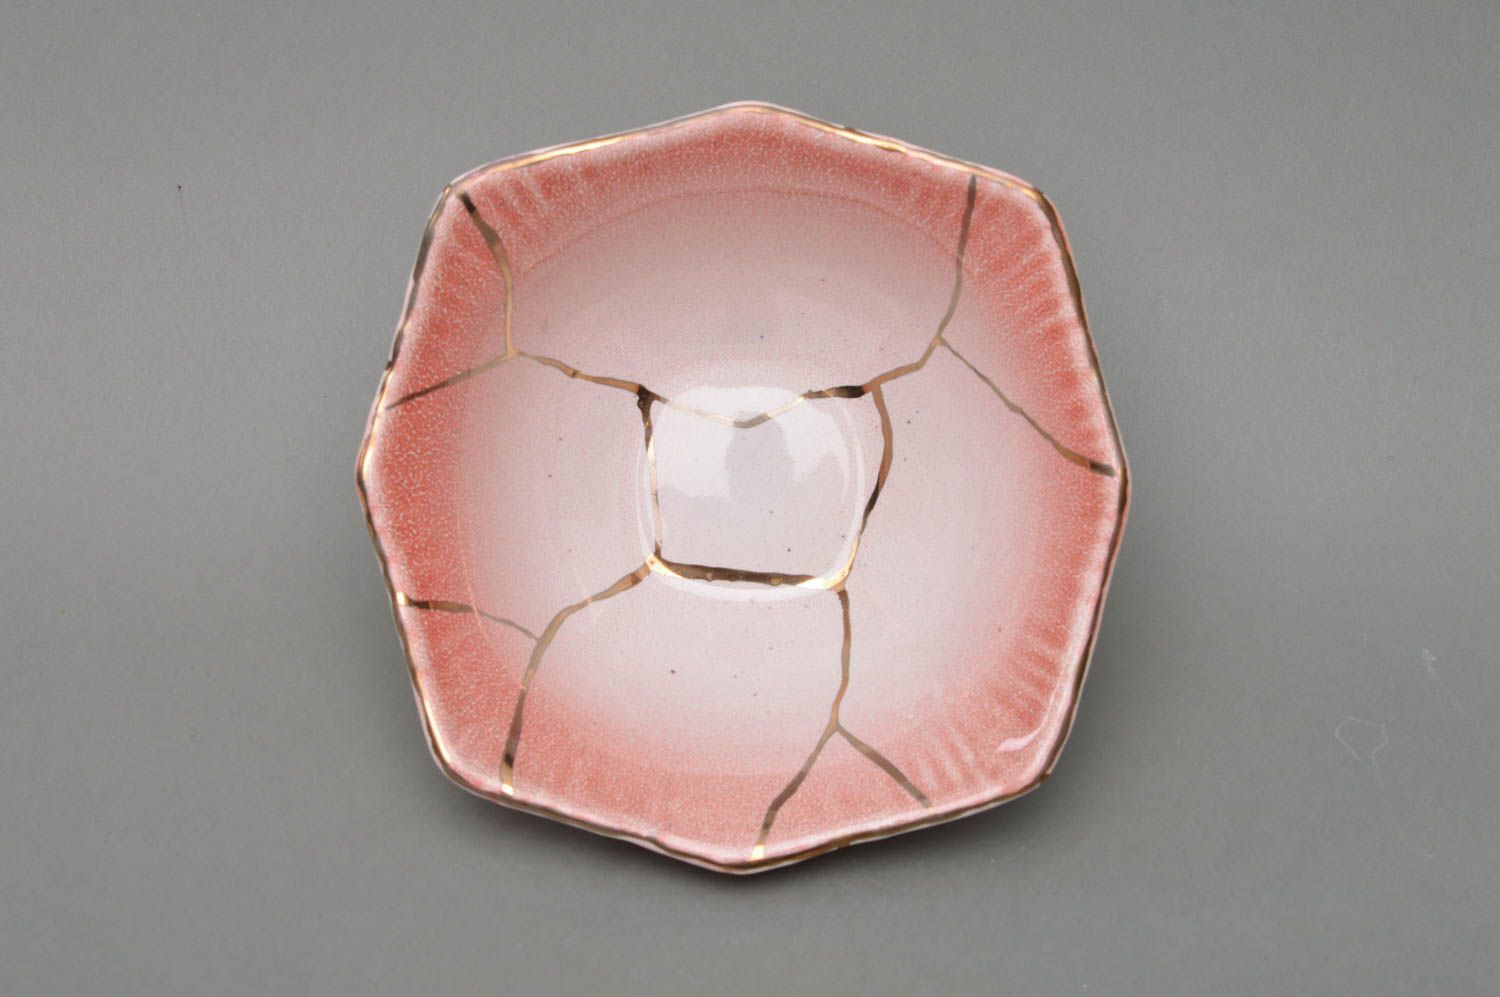 Joli saladier en porcelaine rose clair peint fait main de forme originale photo 2